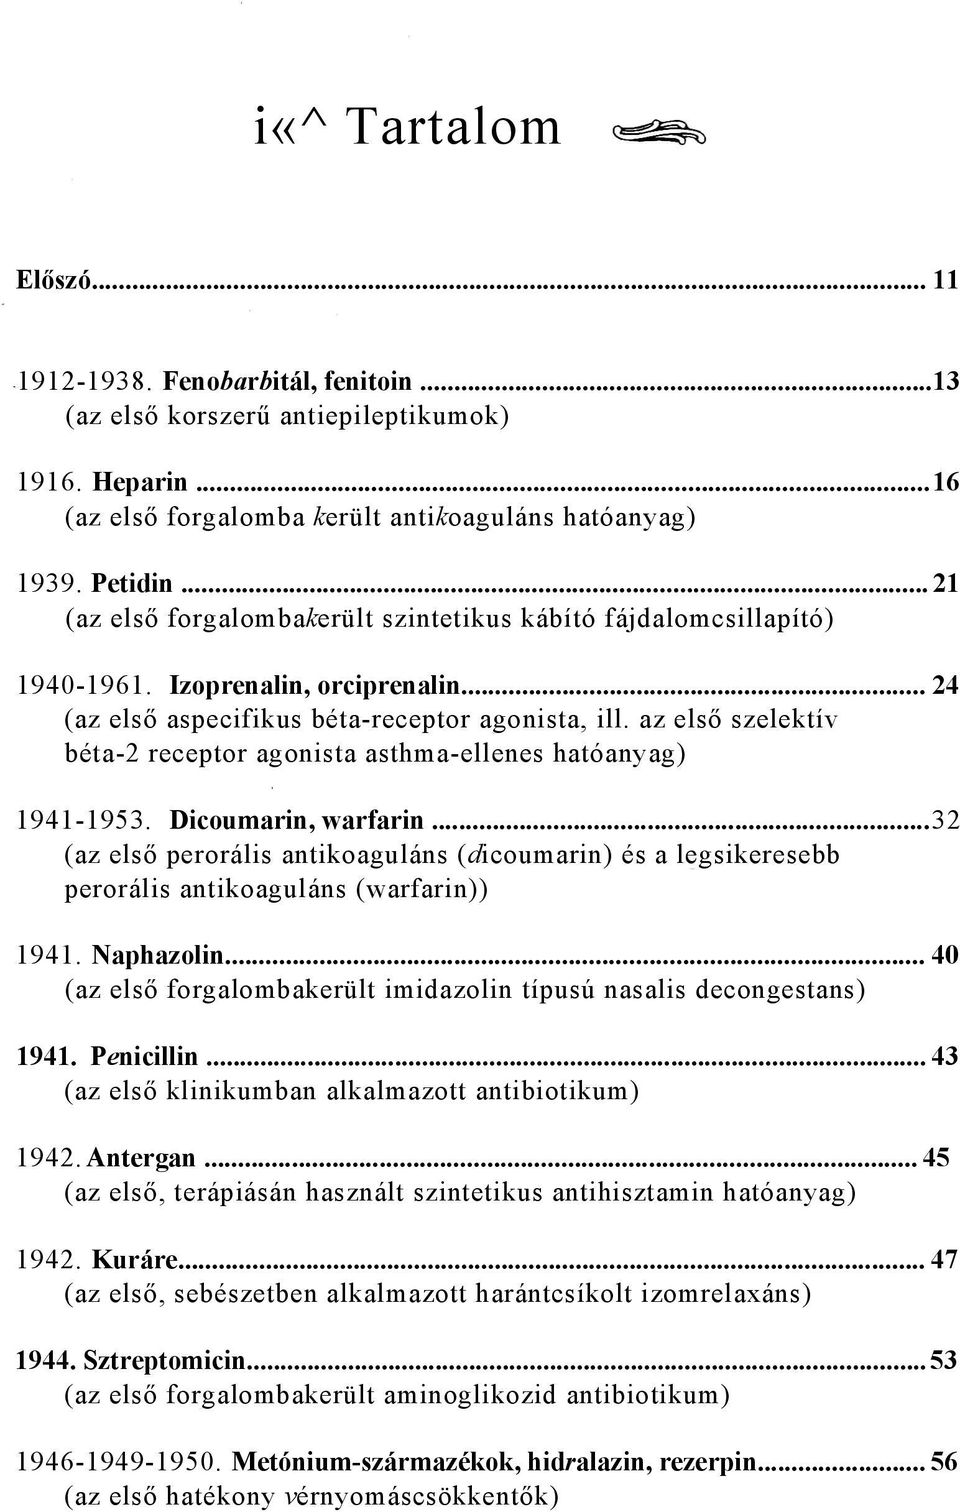 az első szelektív béta-2 receptor agonista asthma-ellenes hatóanyag) 1941-1953. Dicoumarin, warfarin.